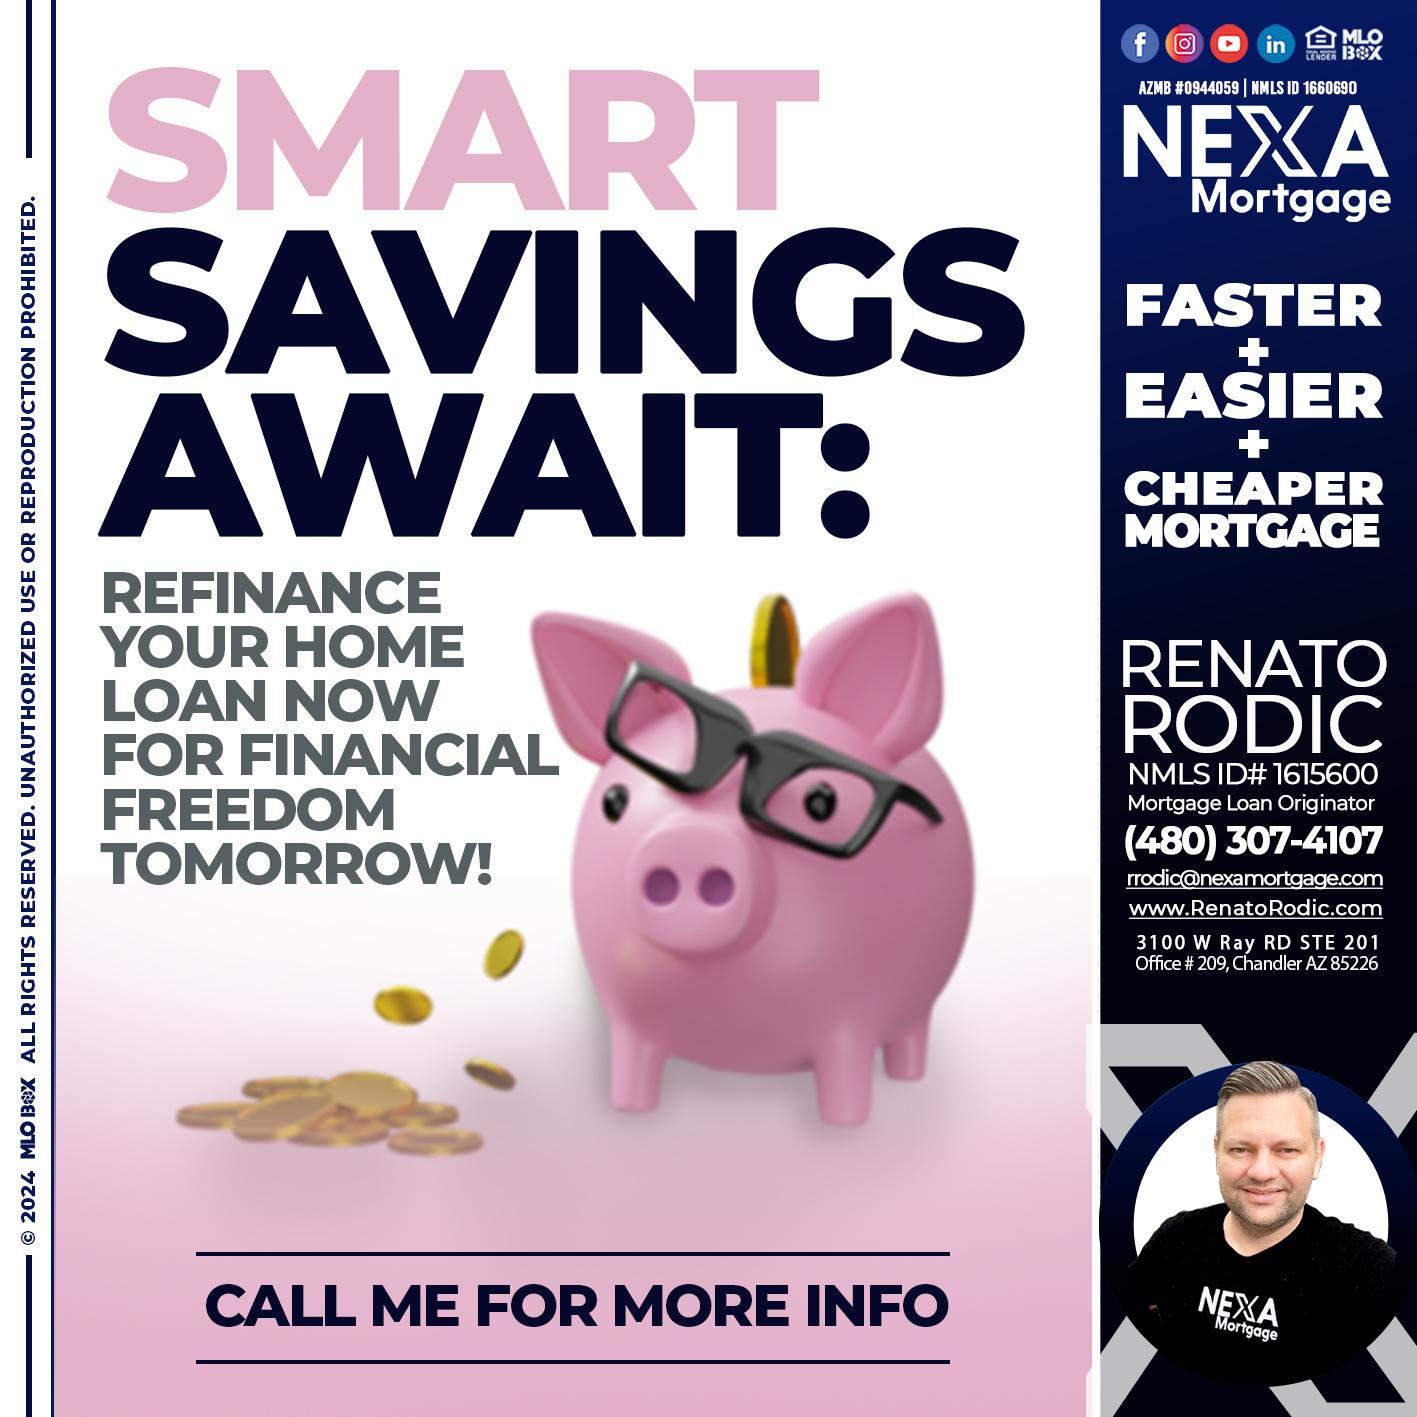 SMART SAVINGS - Renato Rodic -Mortgage Loan Originator